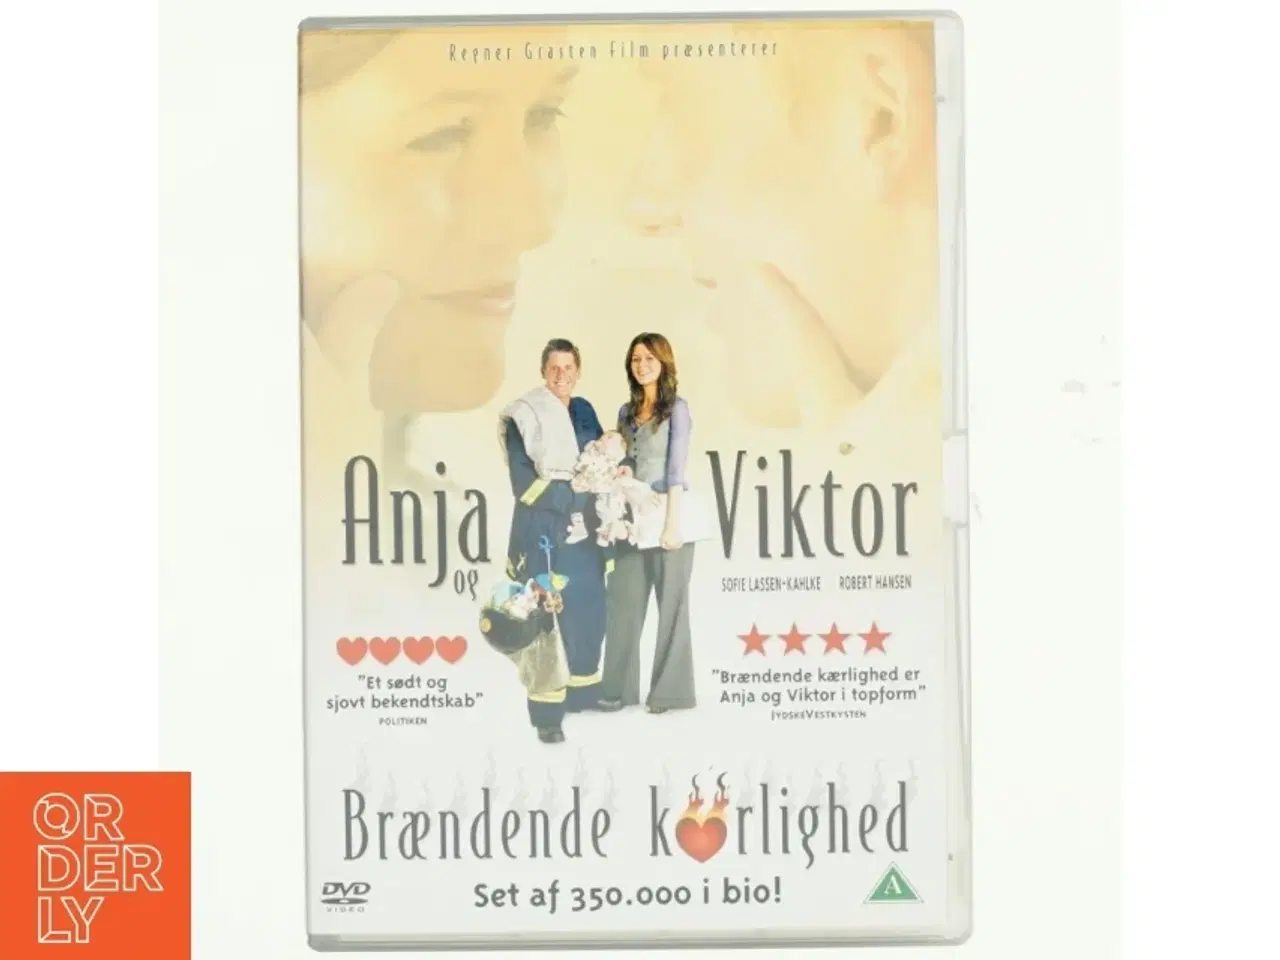 Billede 1 - Anja & Viktor, brændende kærlighed